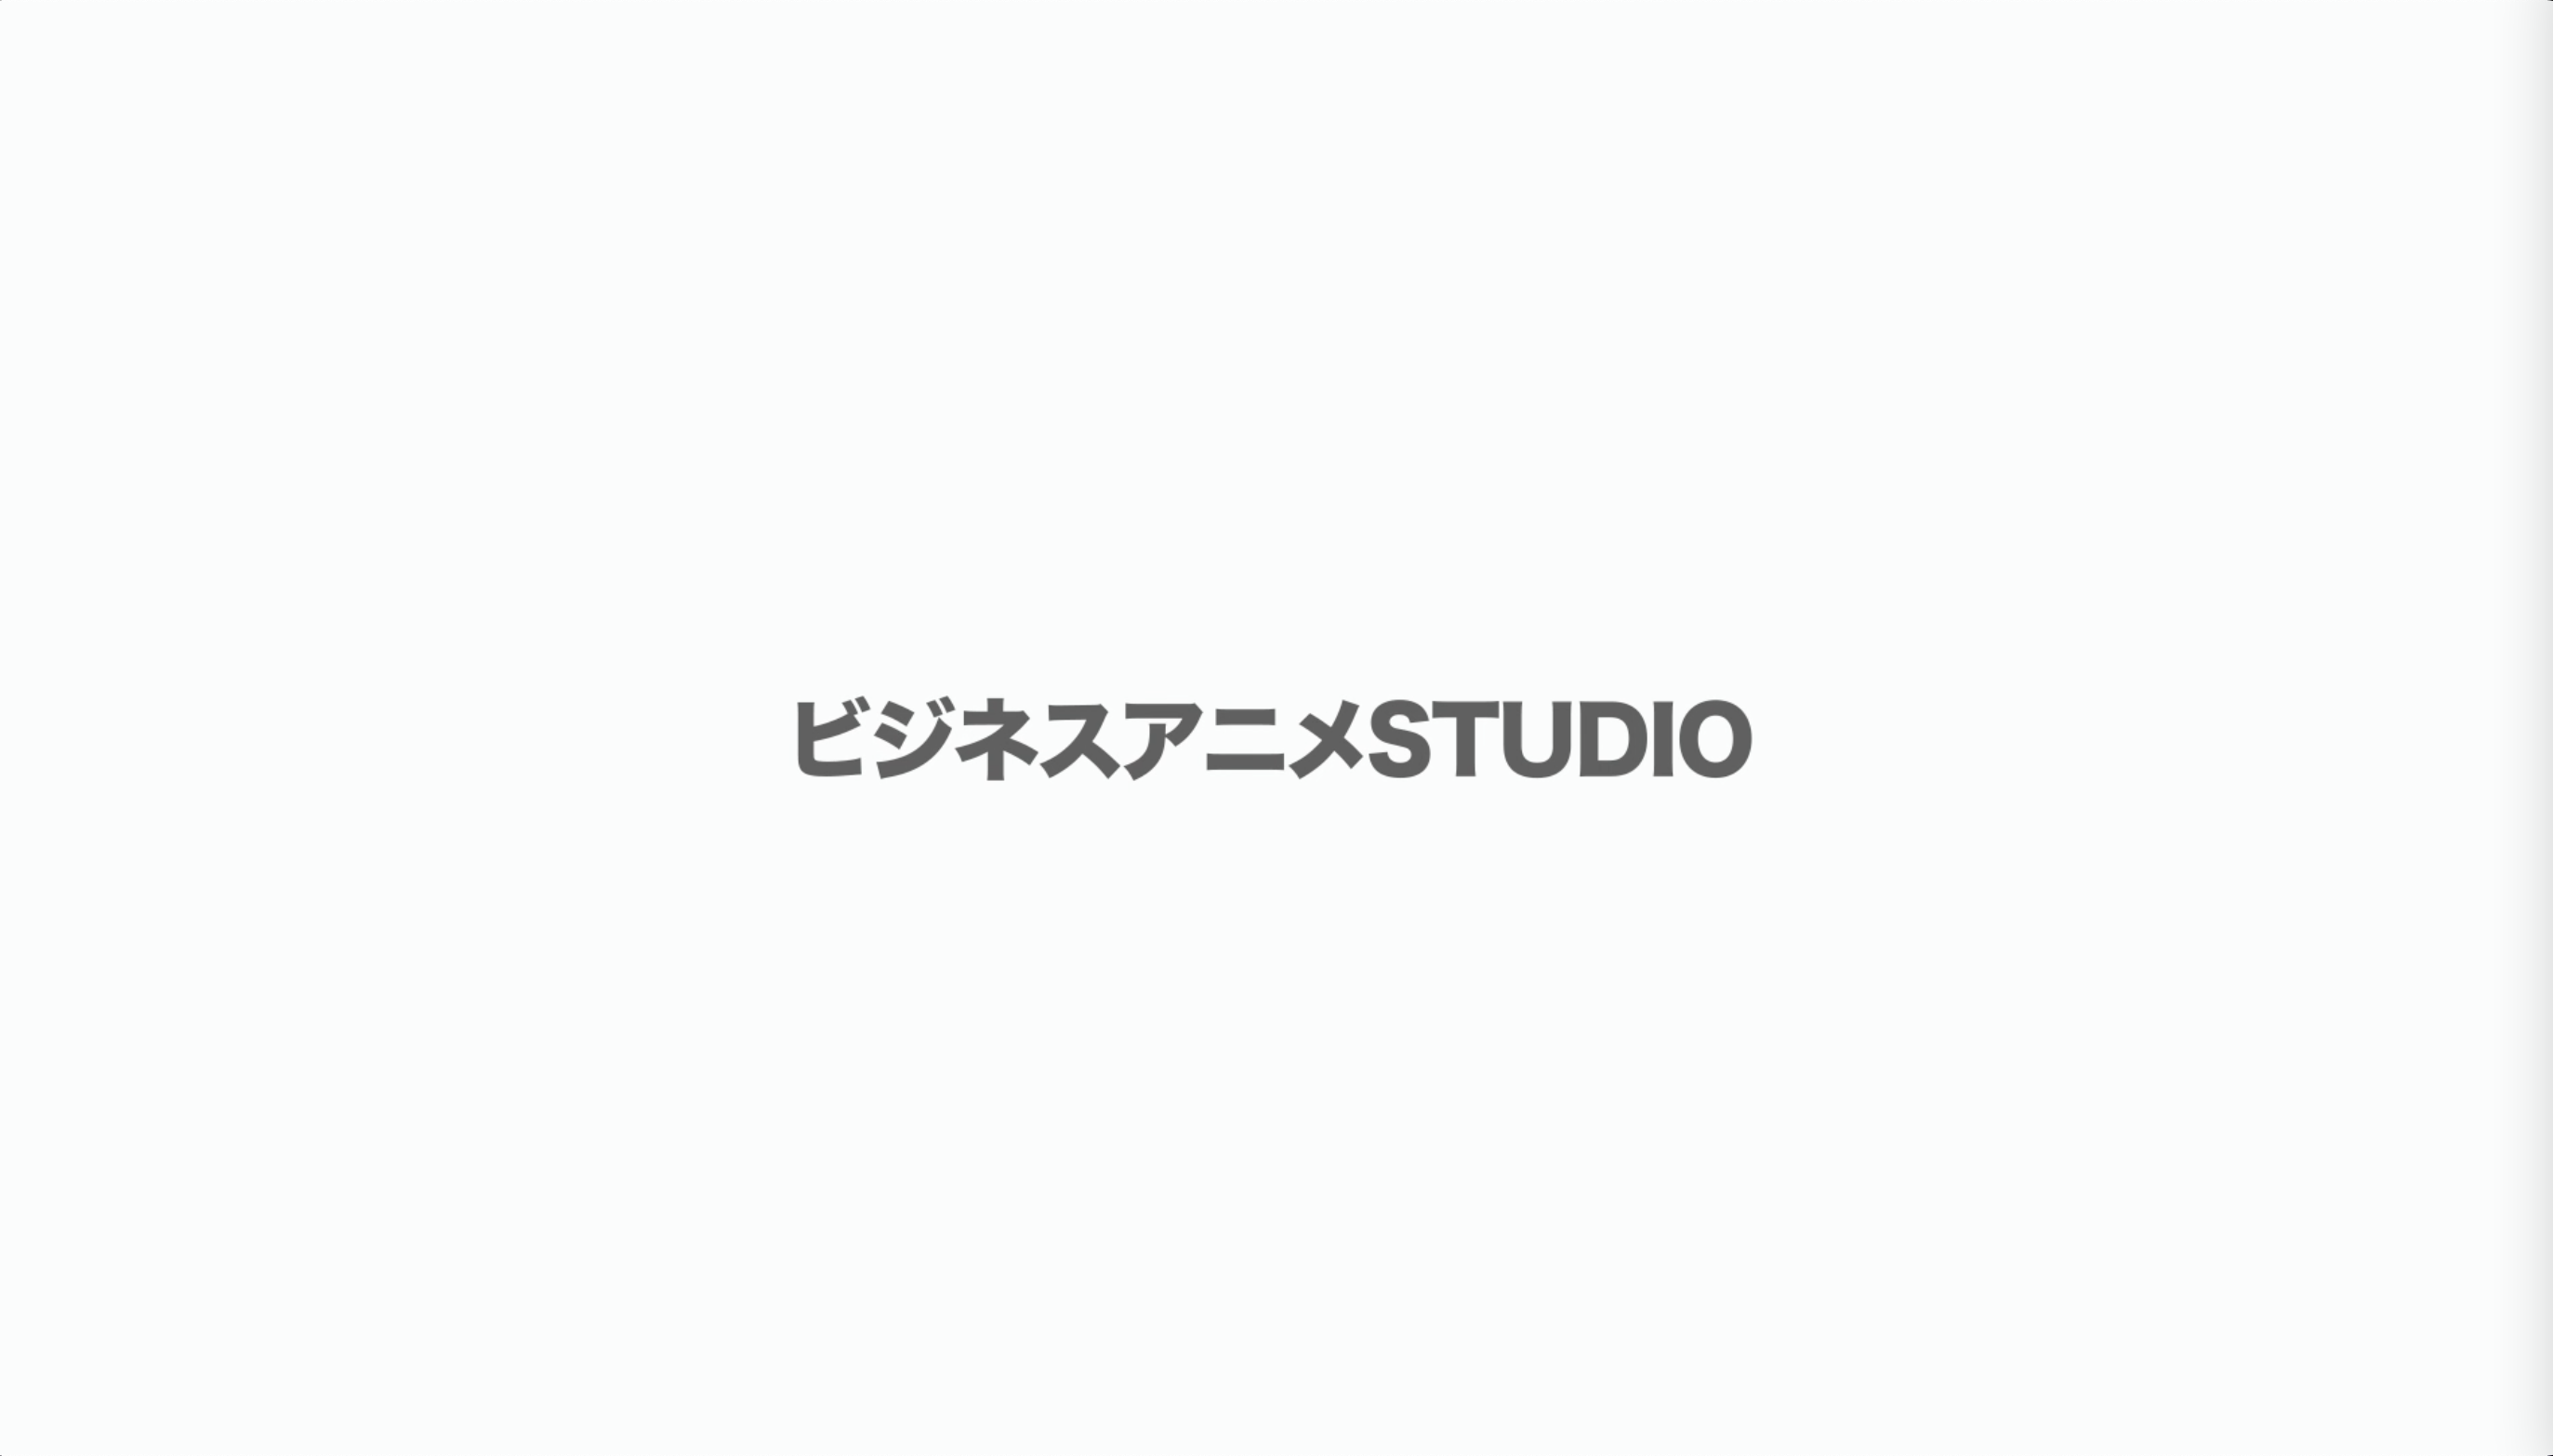 ビジネスアニメSTUDIO